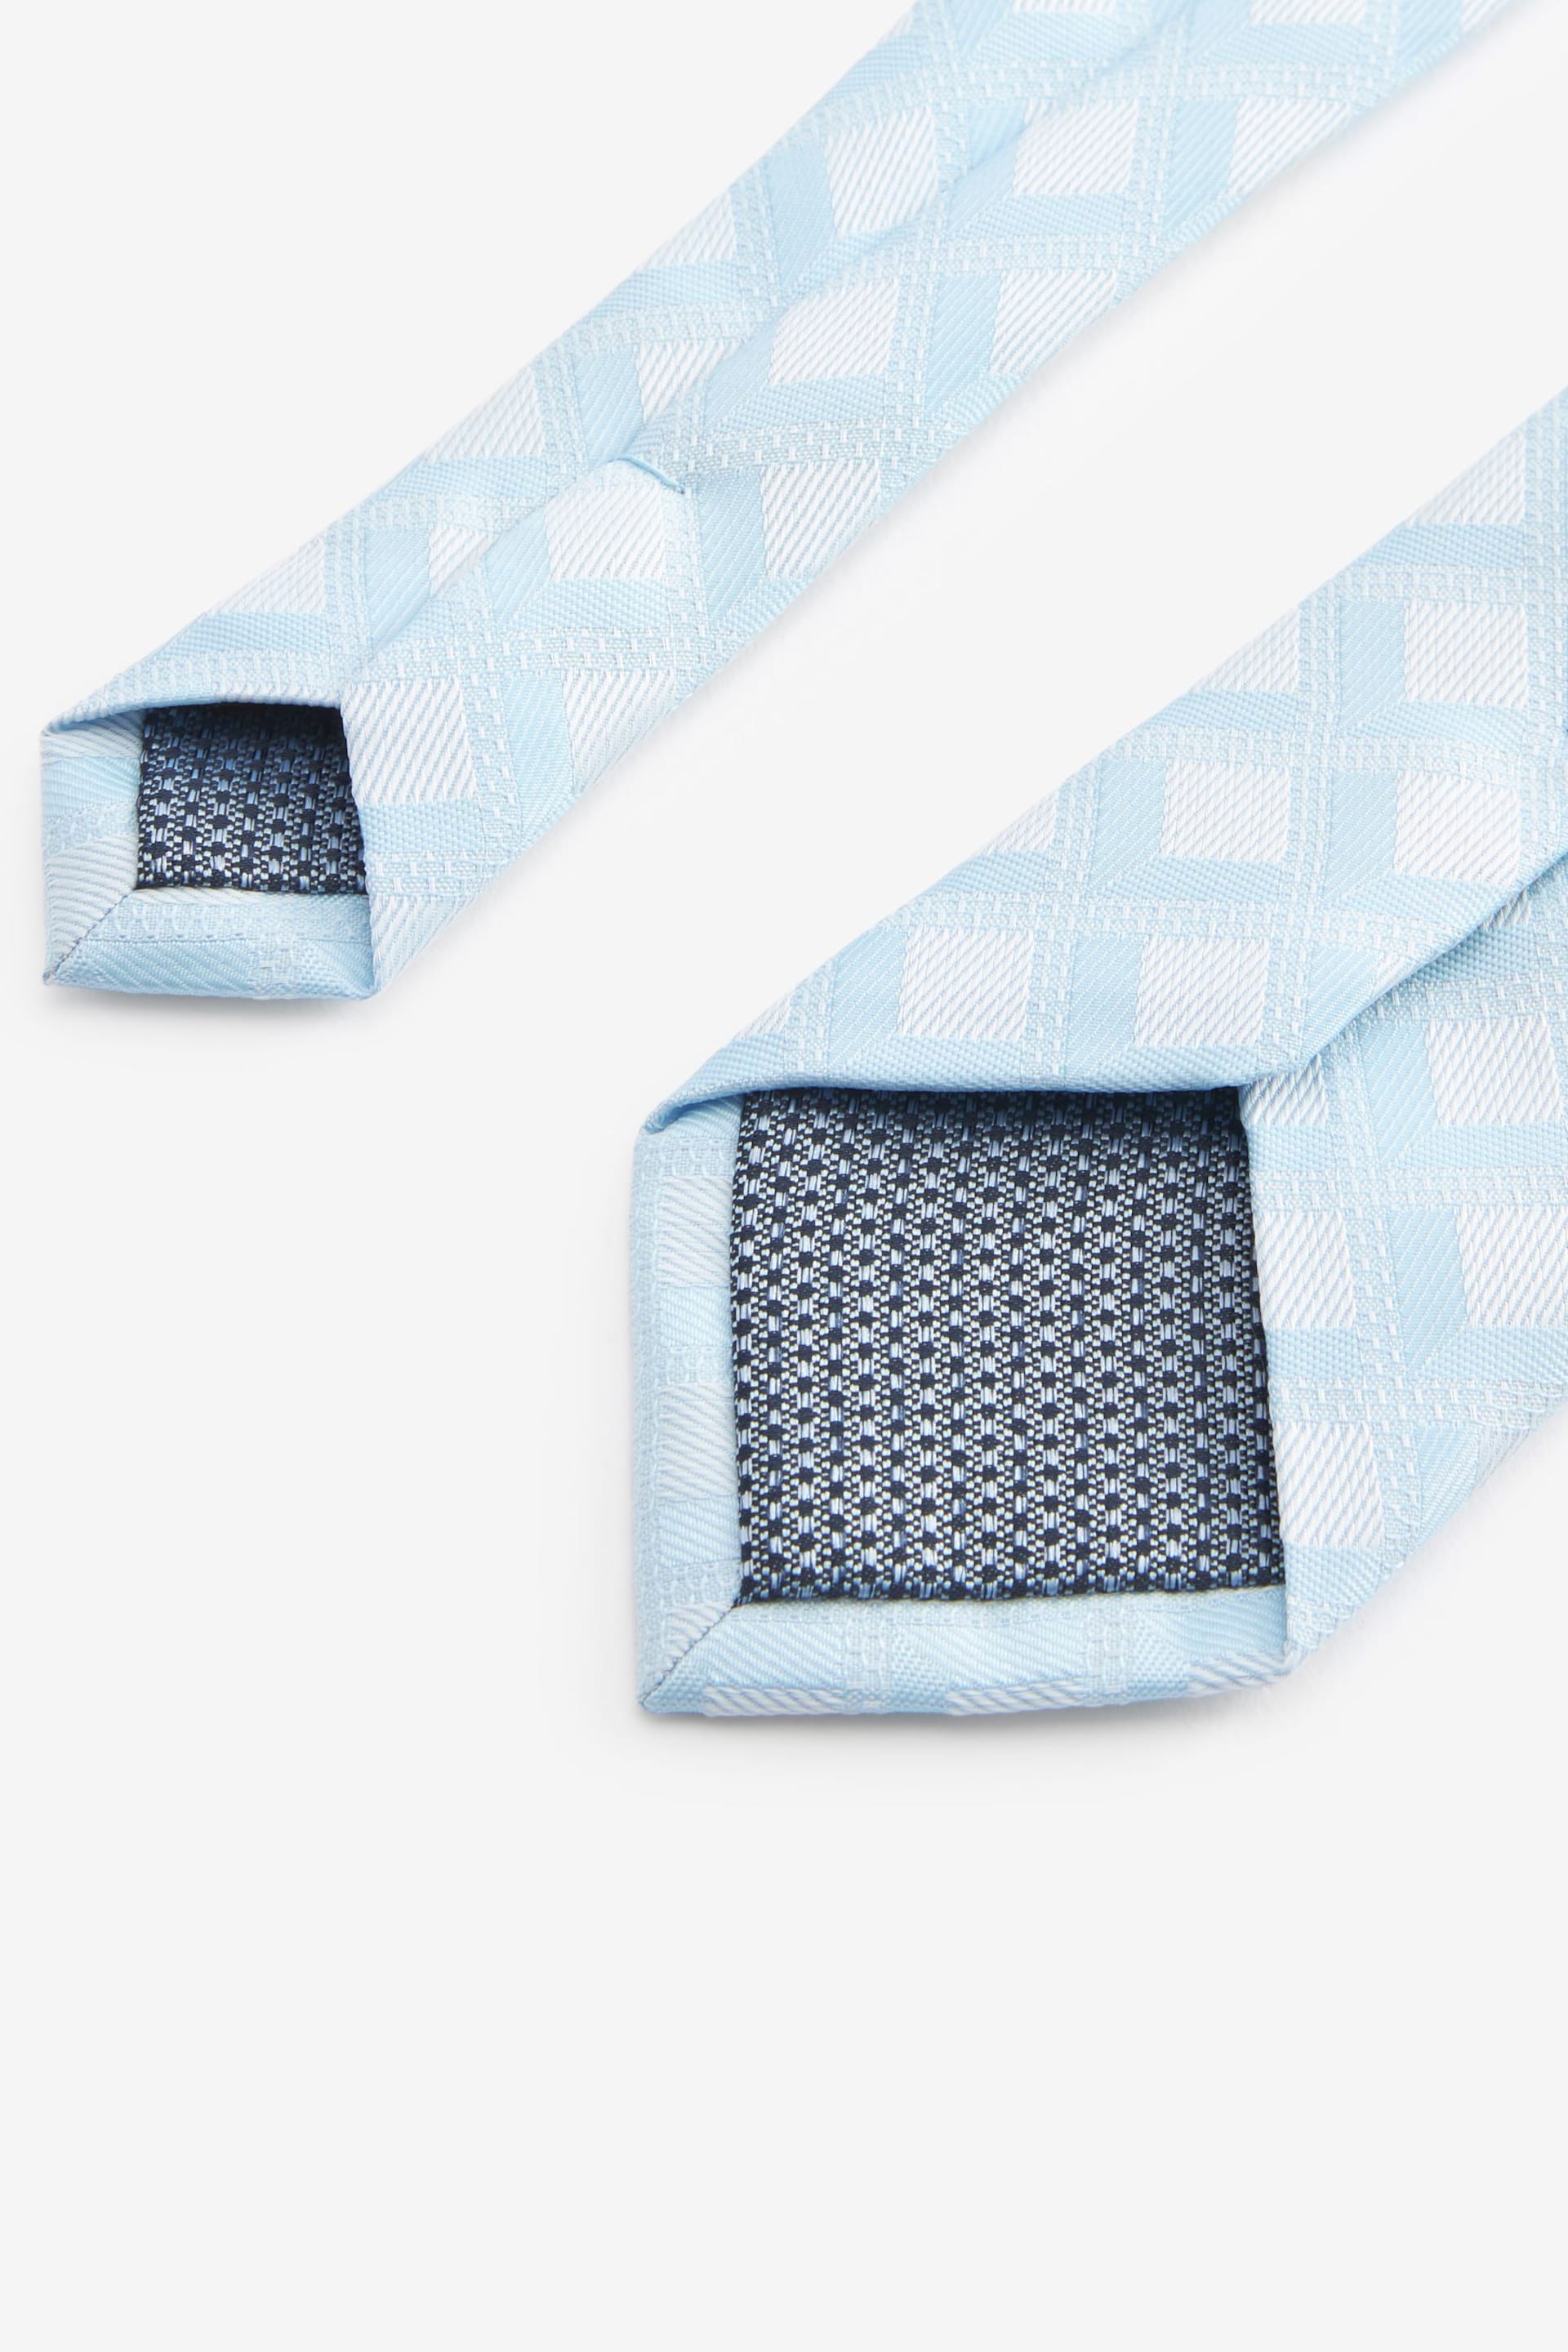 Light Blue Slim Diamond Jacquard Tie - Image 3 of 3